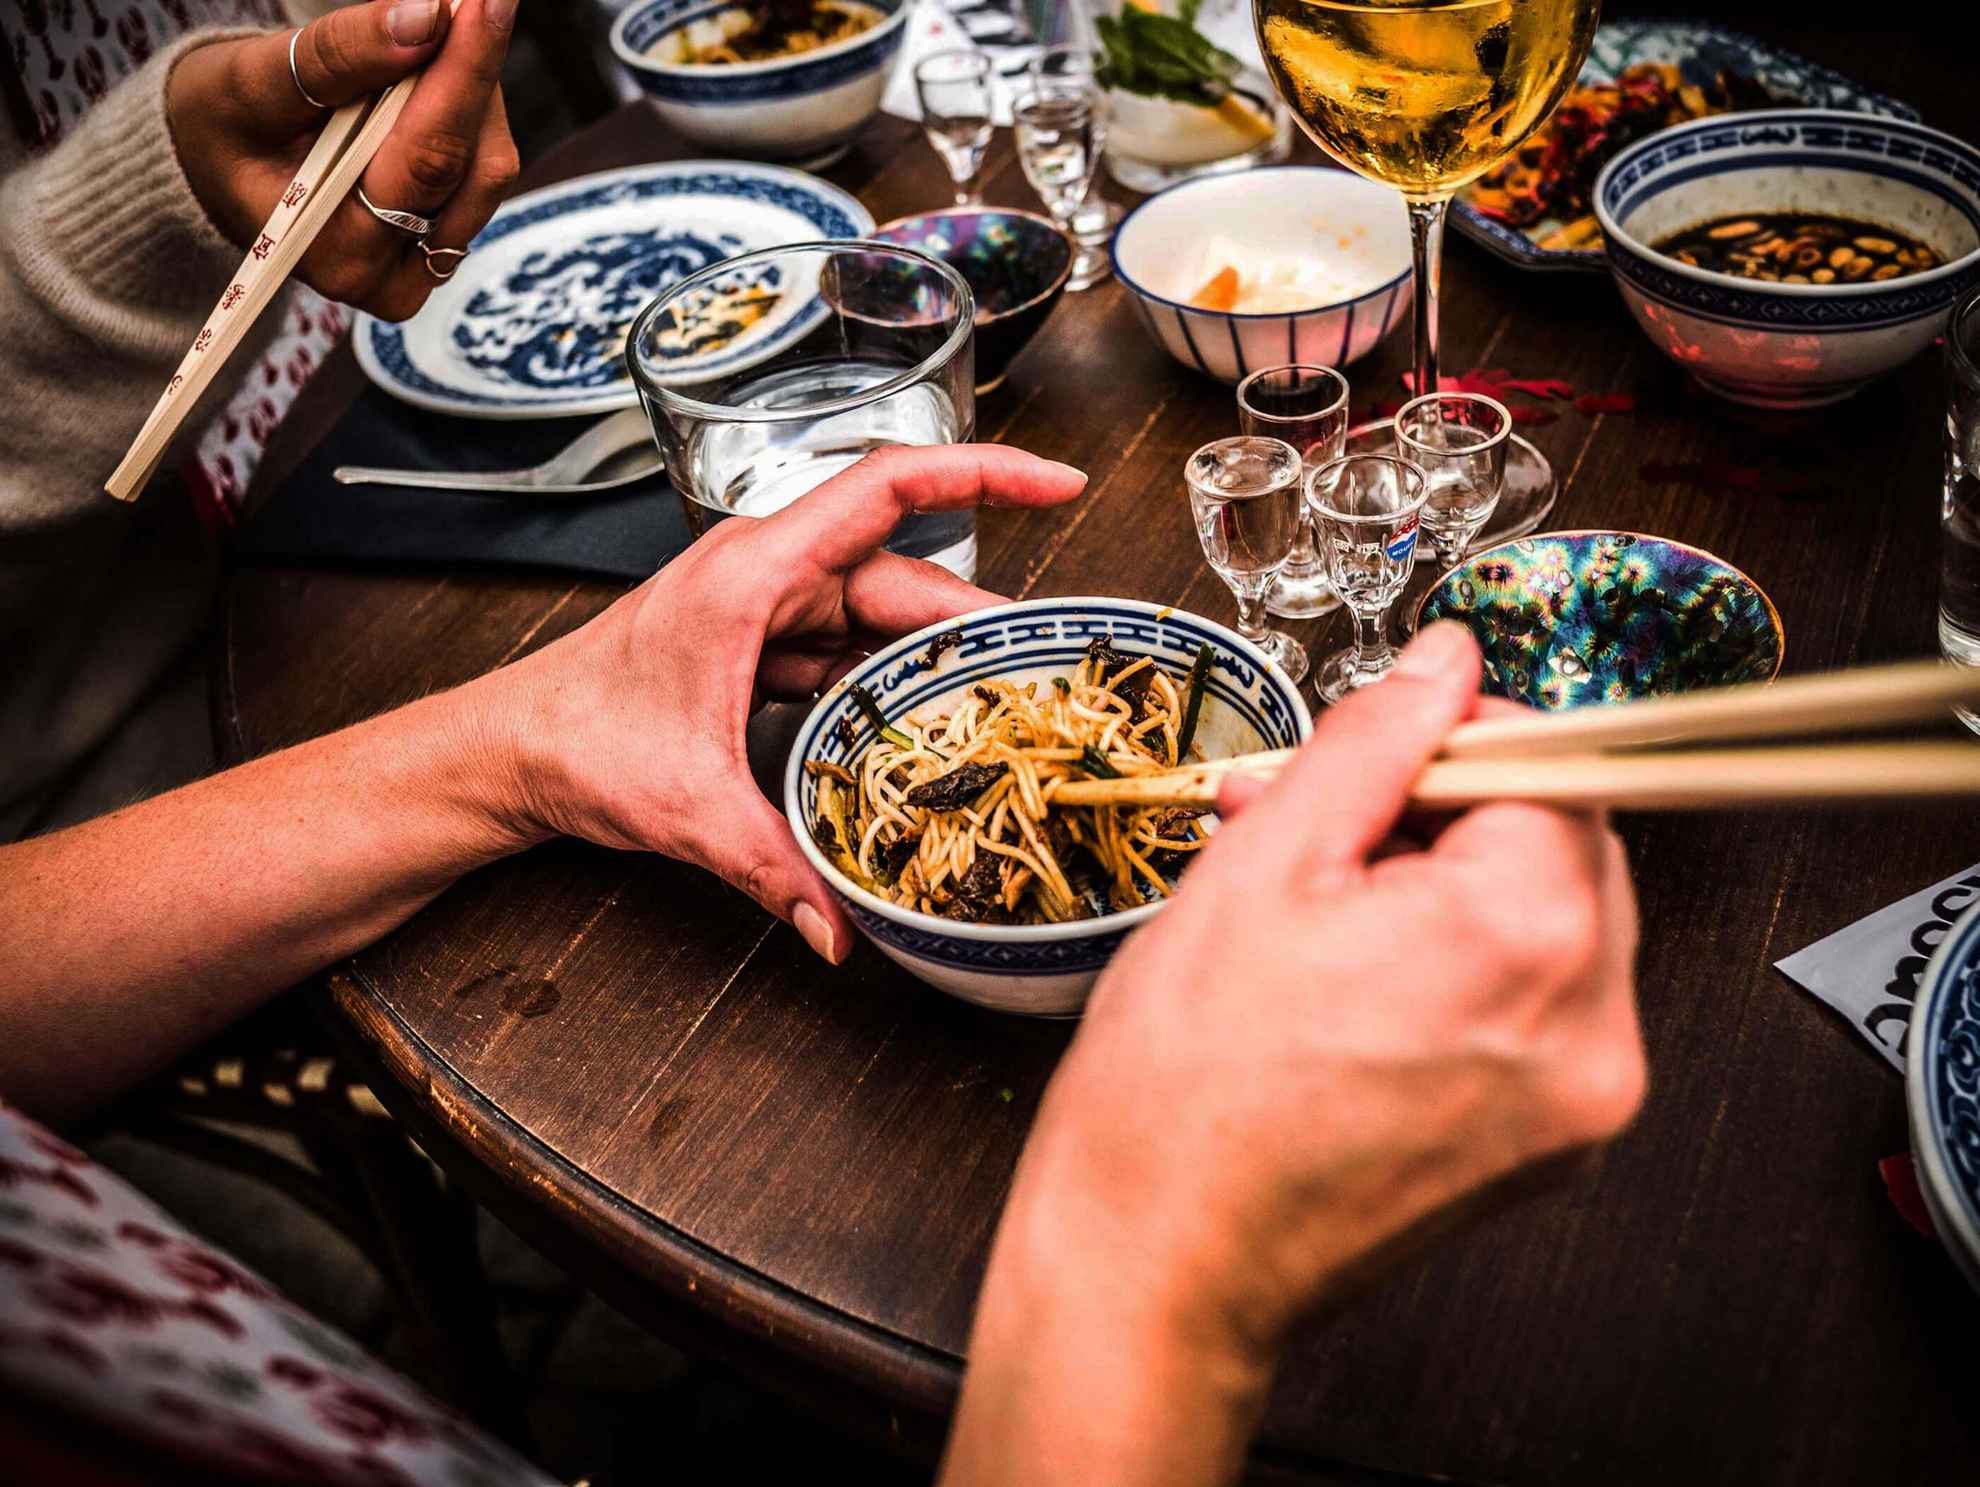 Ein Tisch gedeckt mit Gerichten. Menschen essen mit Essstäbchen aus kleinen verzierten Schalen.